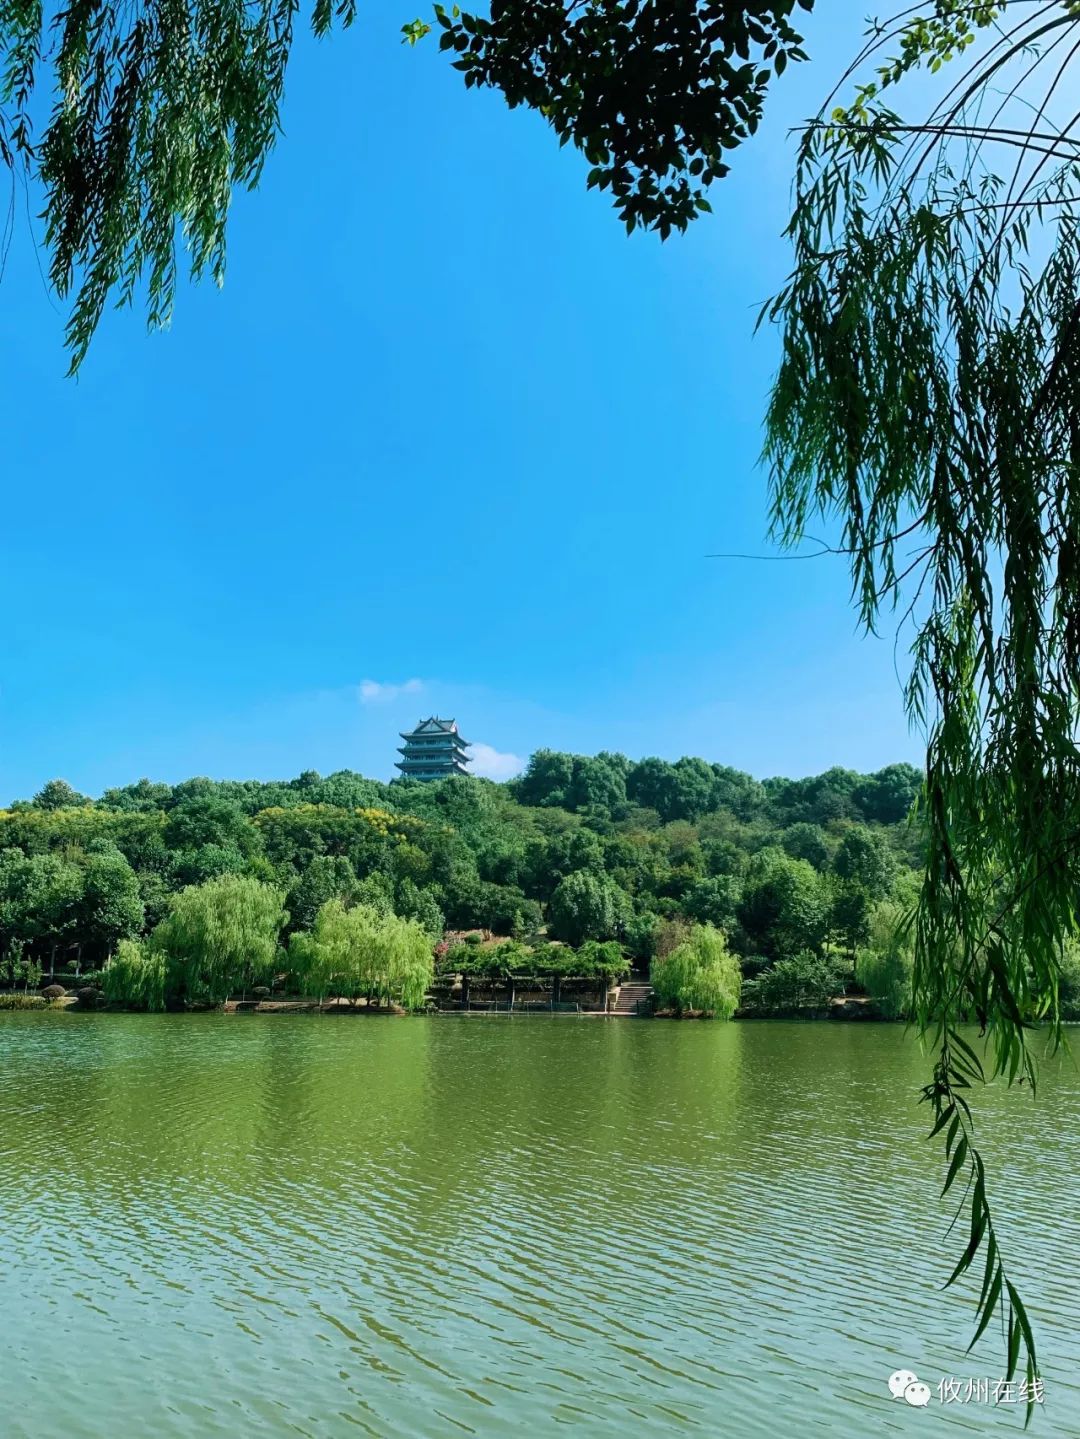 攸县城中心的一幅画,攸州公园是被你遗忘的明珠吗?